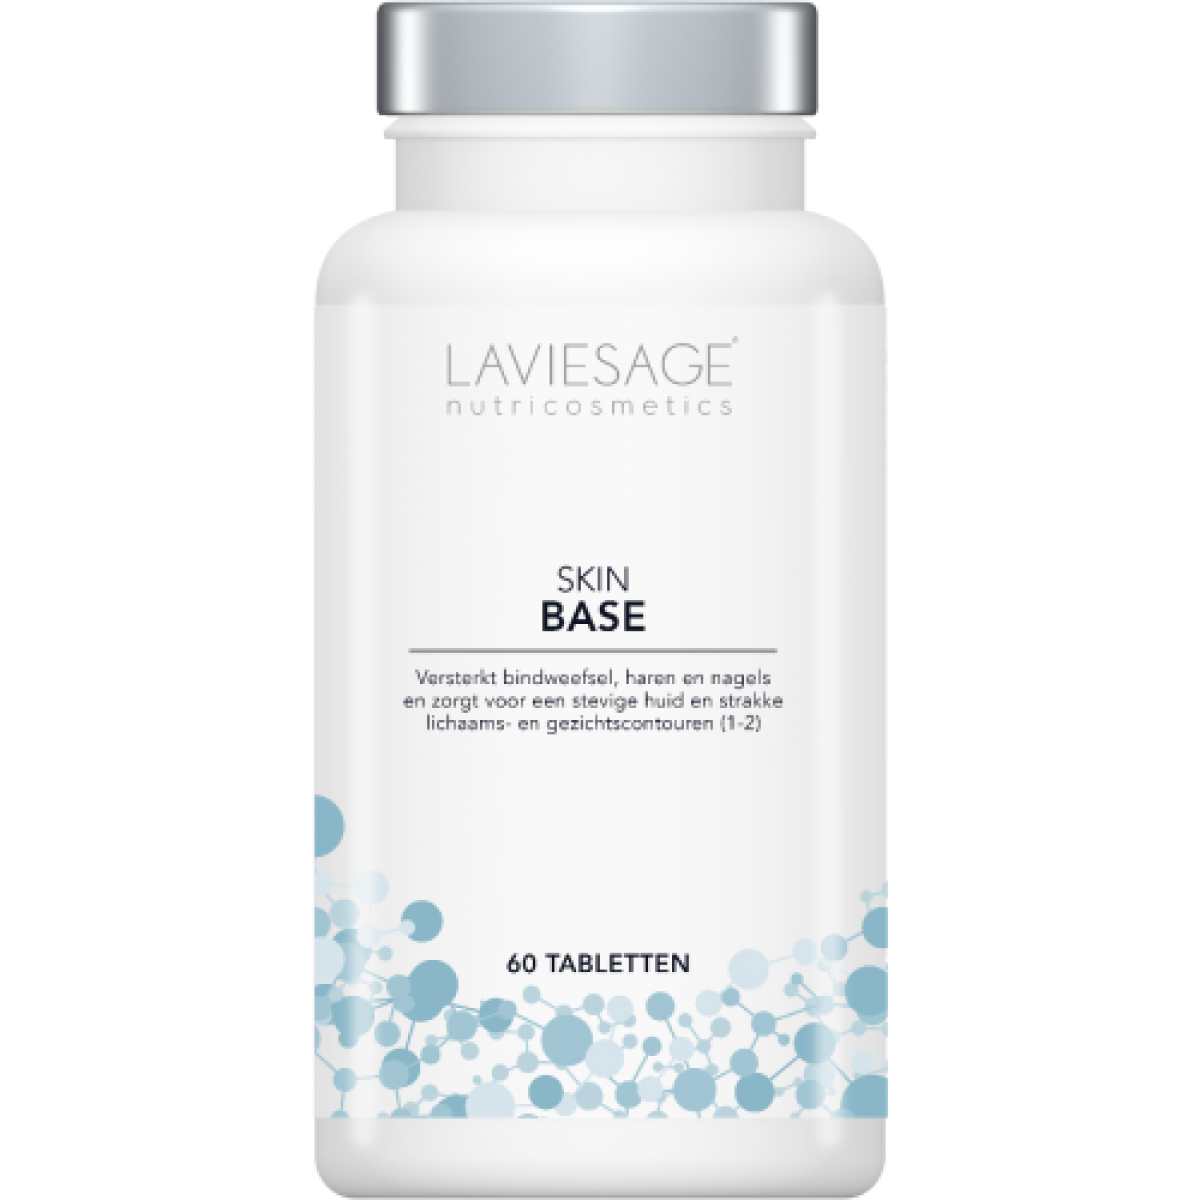 Laviesage Nutricosmetics Skin Base 60 tabletten